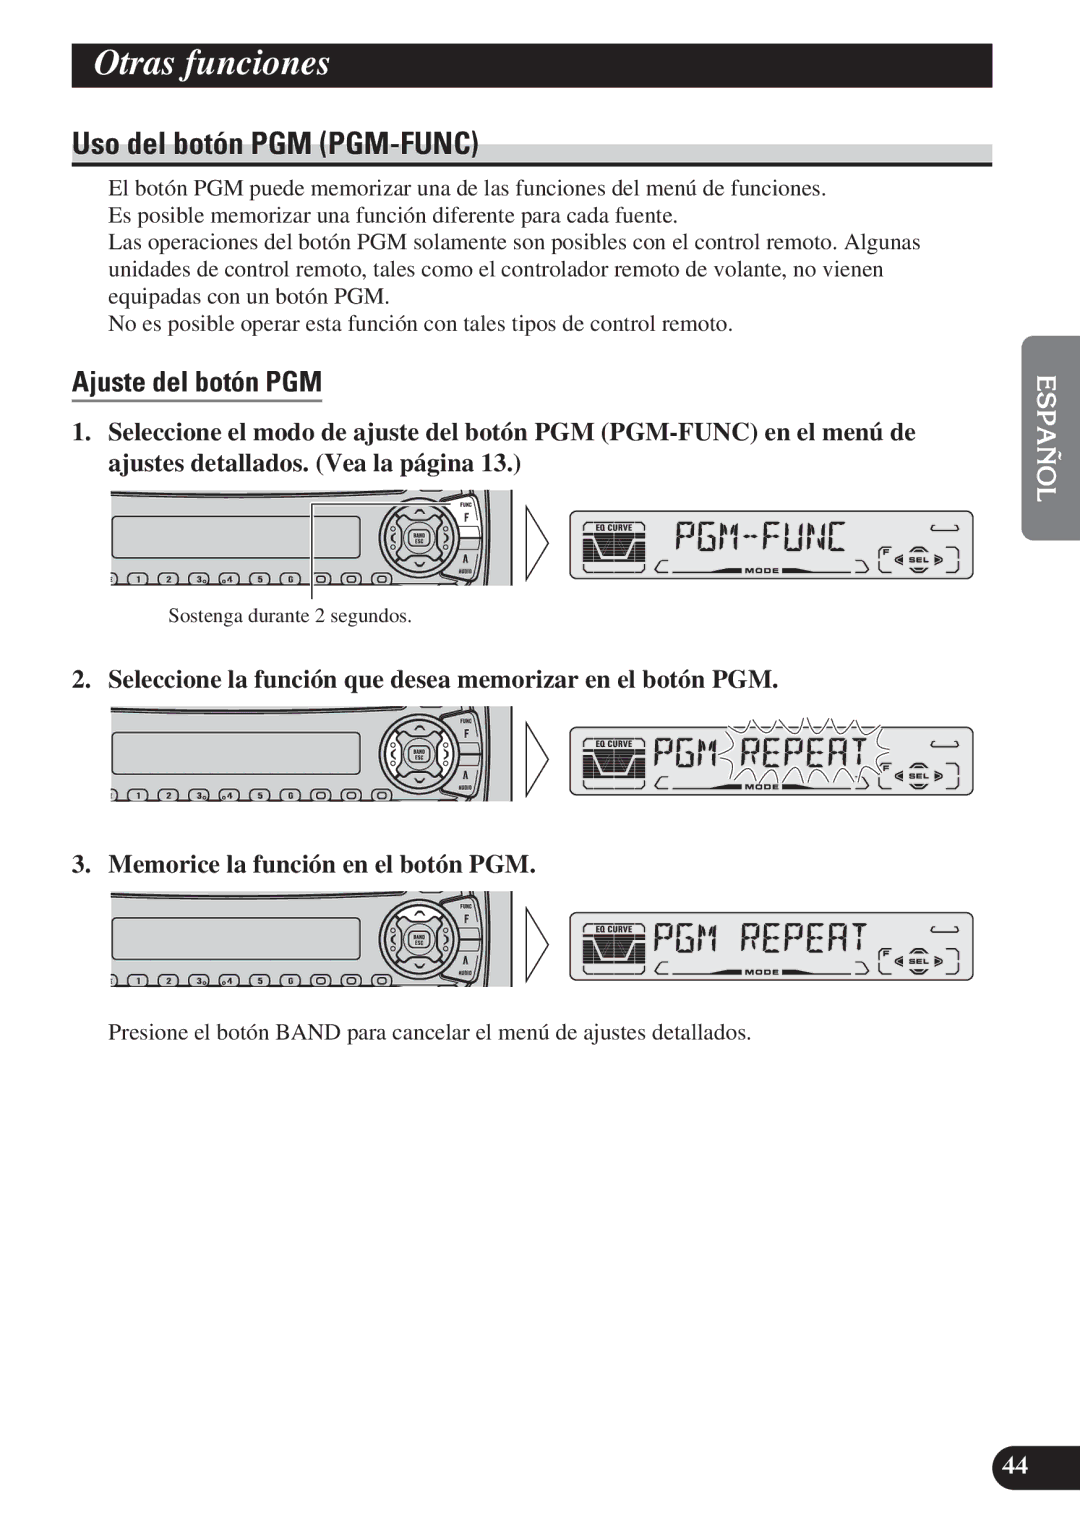 Pioneer DEH-P4100R operation manual Otras funciones, Uso del botón PGM PGM-FUNC, Ajuste del botón PGM 